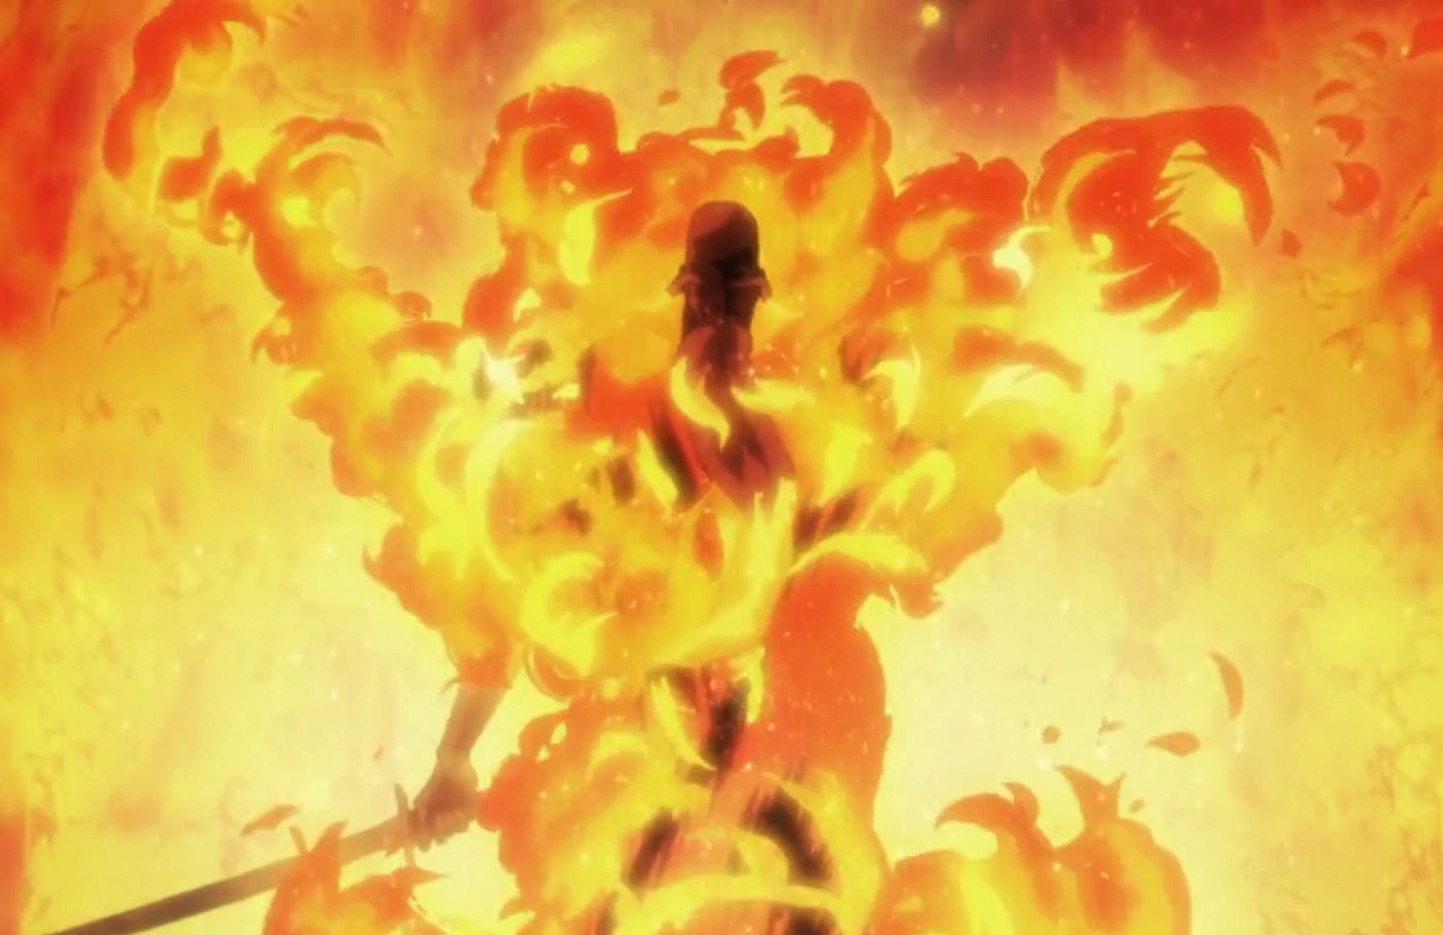 Bleach Thousand Year Blood War Episode 6 Review: Through The Fire